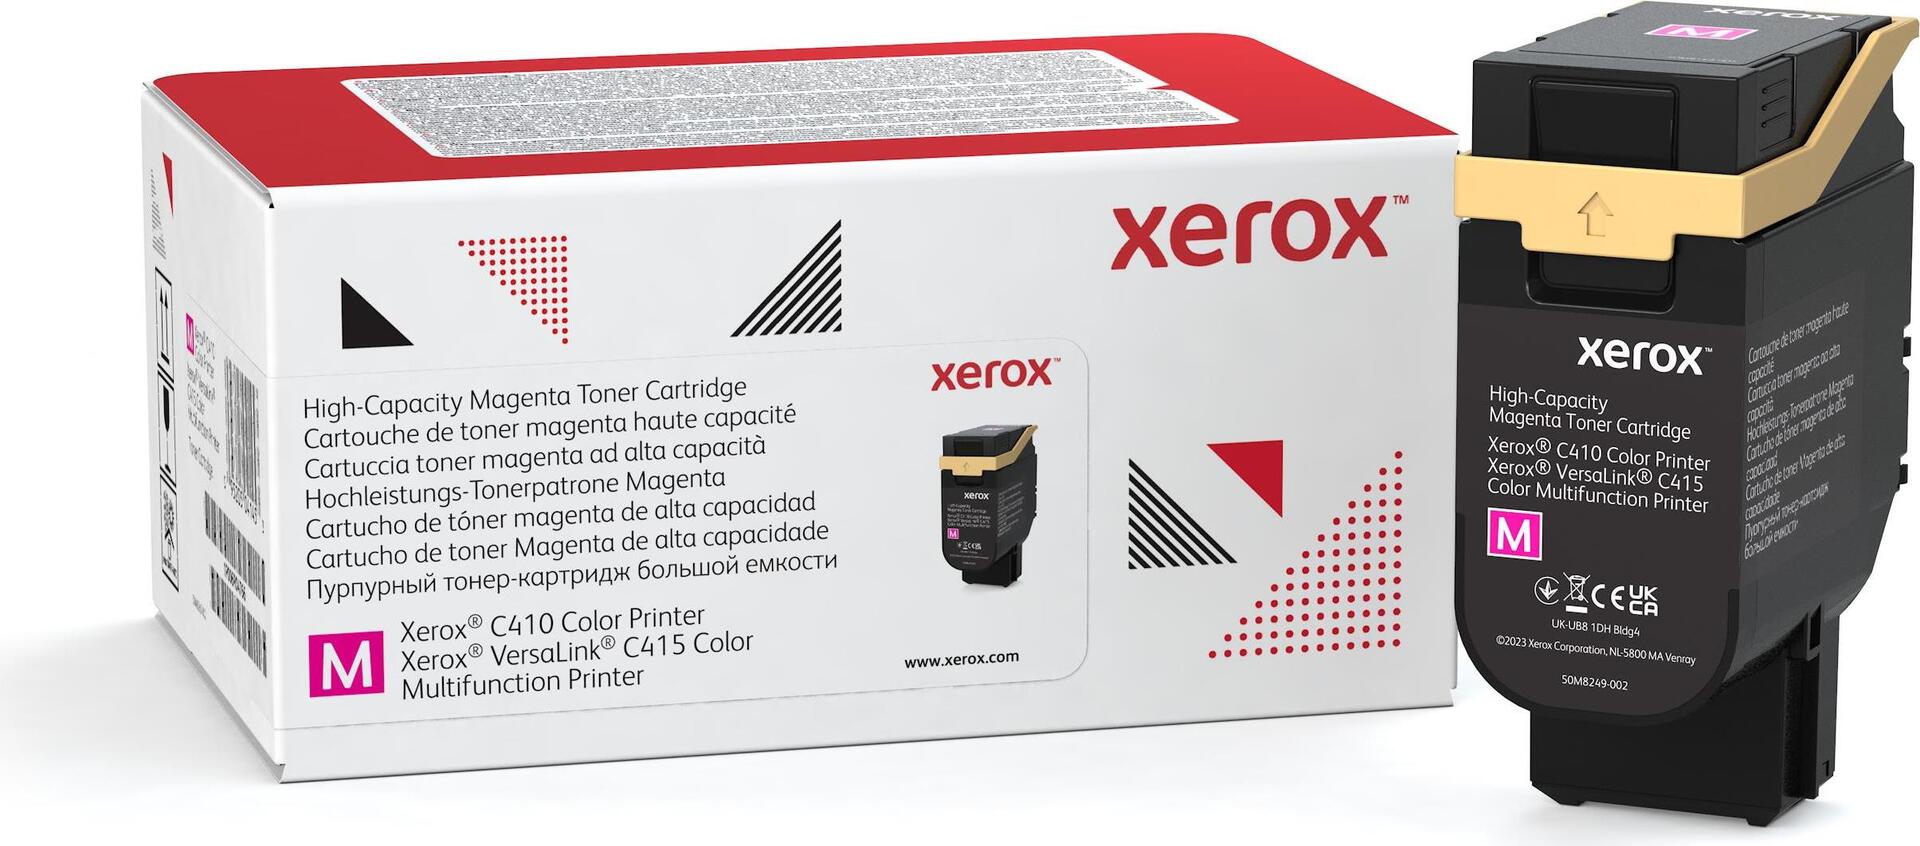 Xerox Mit hoher Kapazität (006R04687)